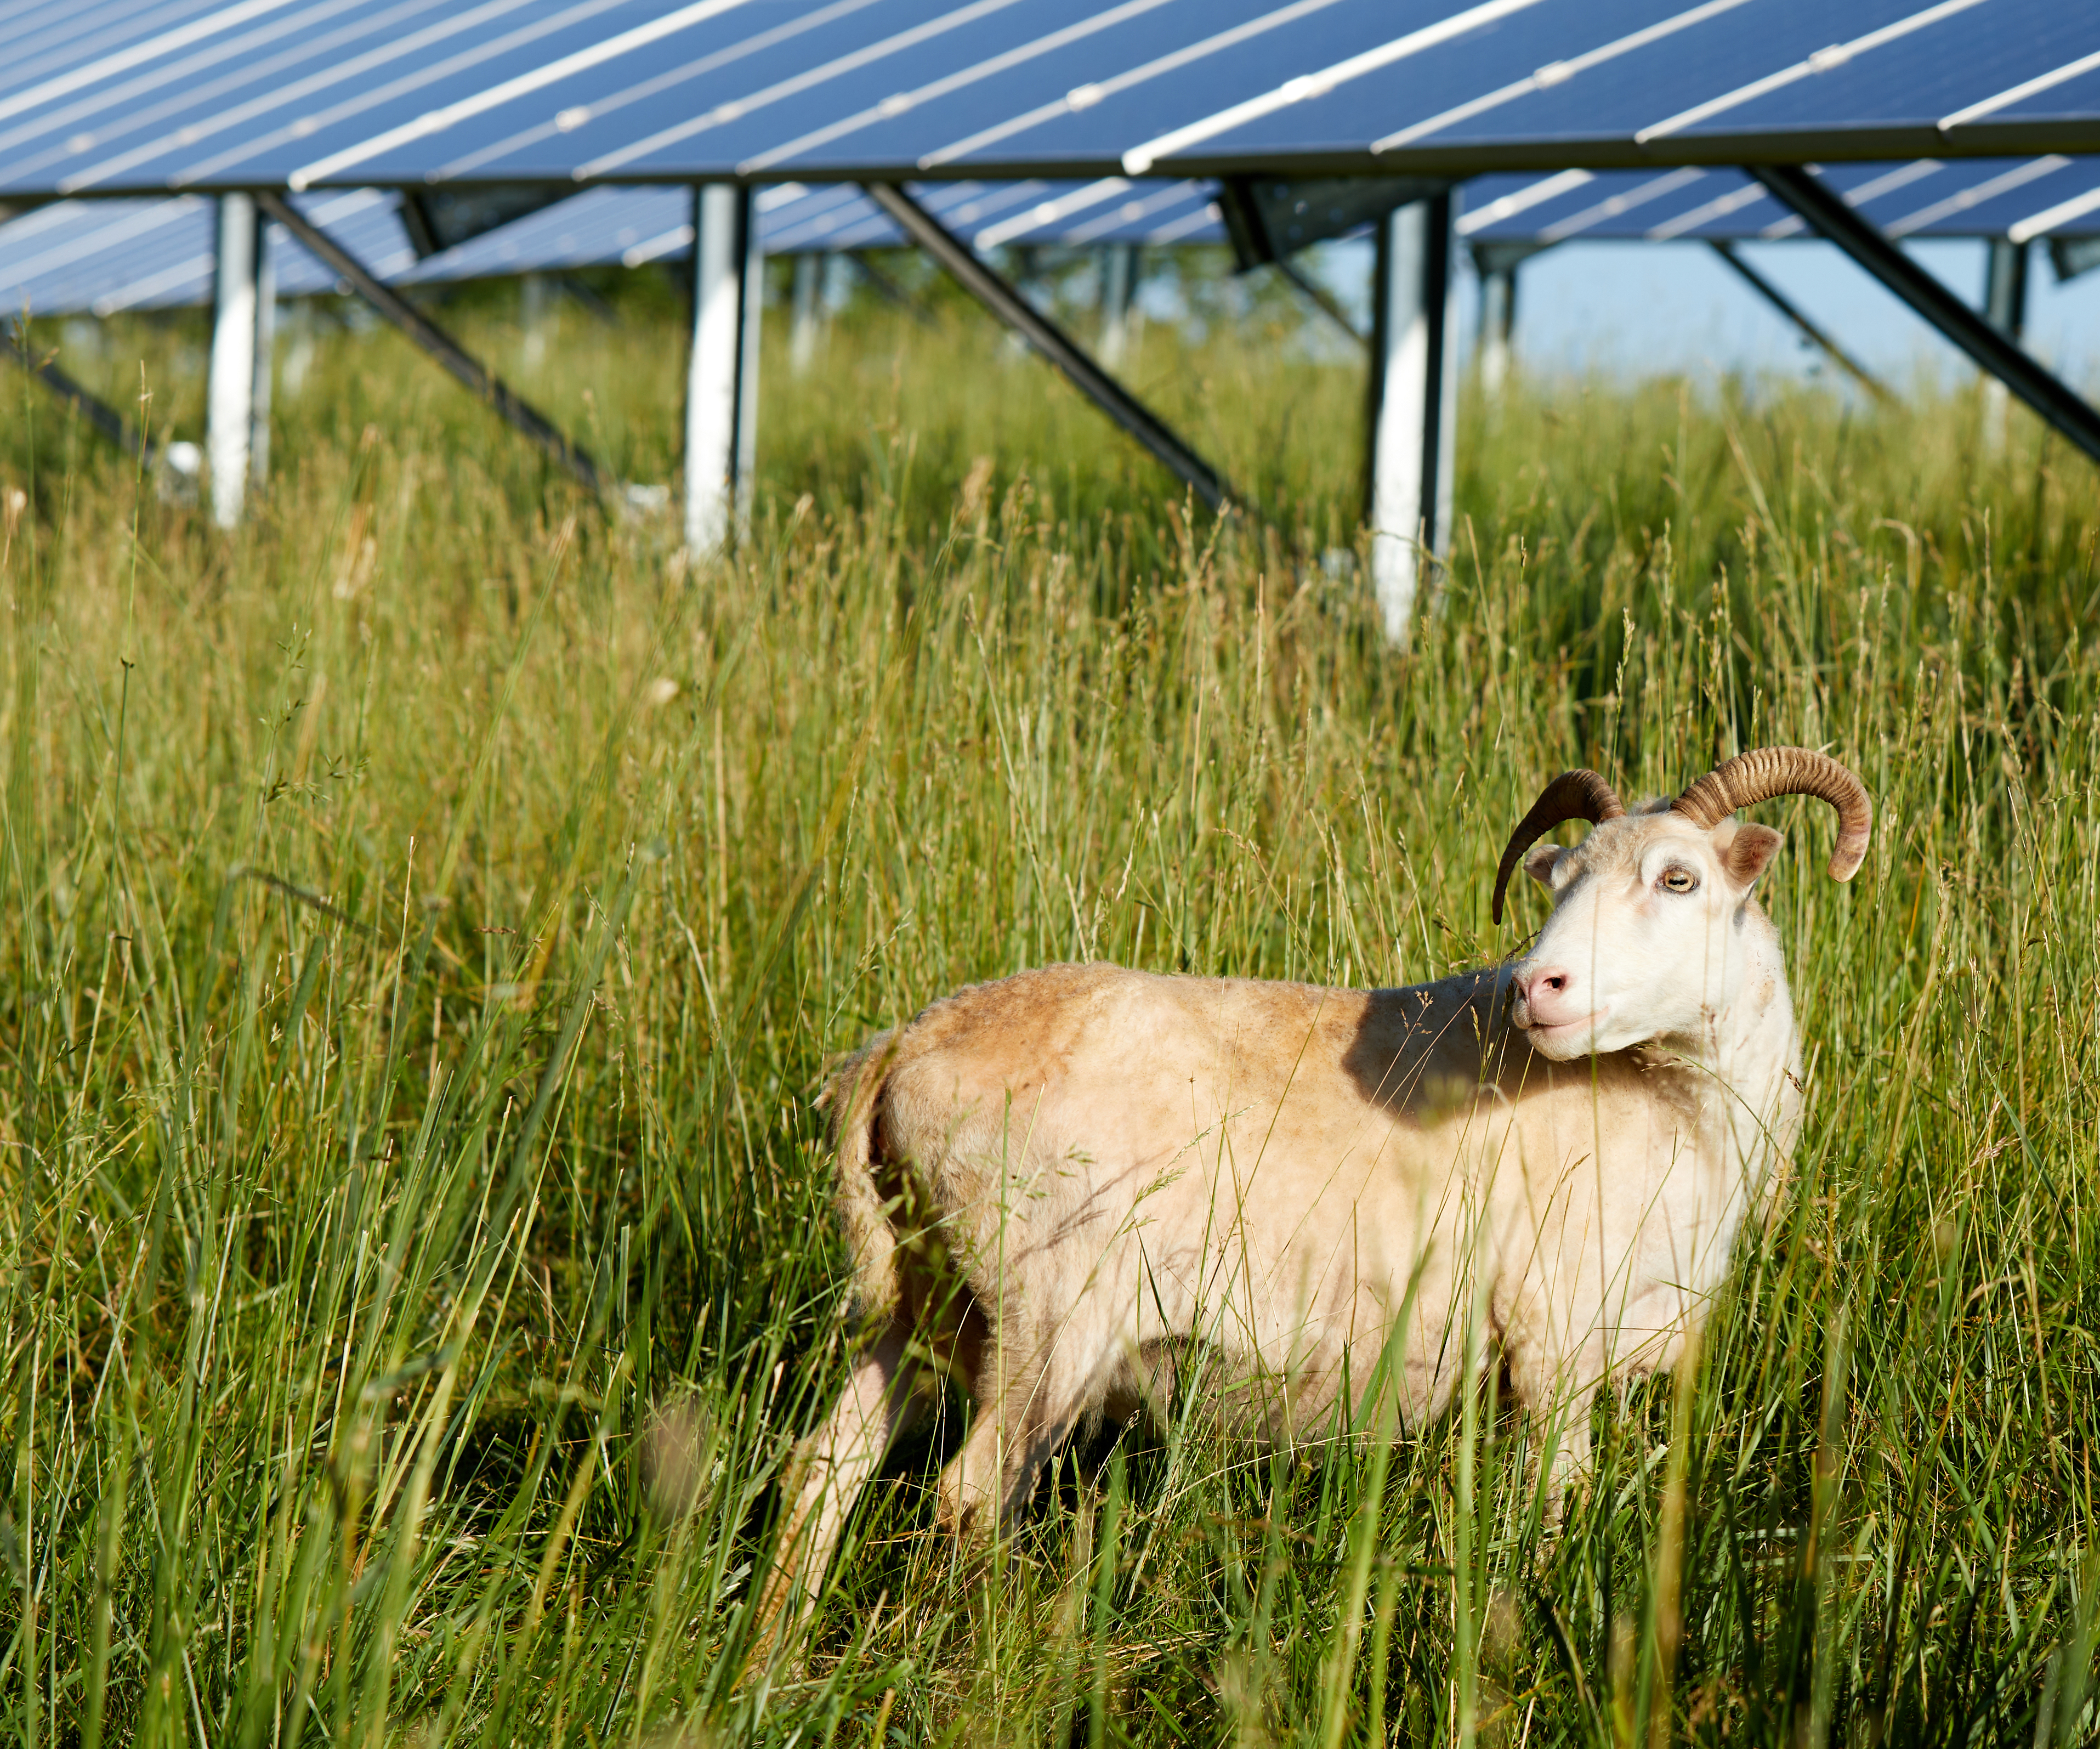 Sheep at solar facility